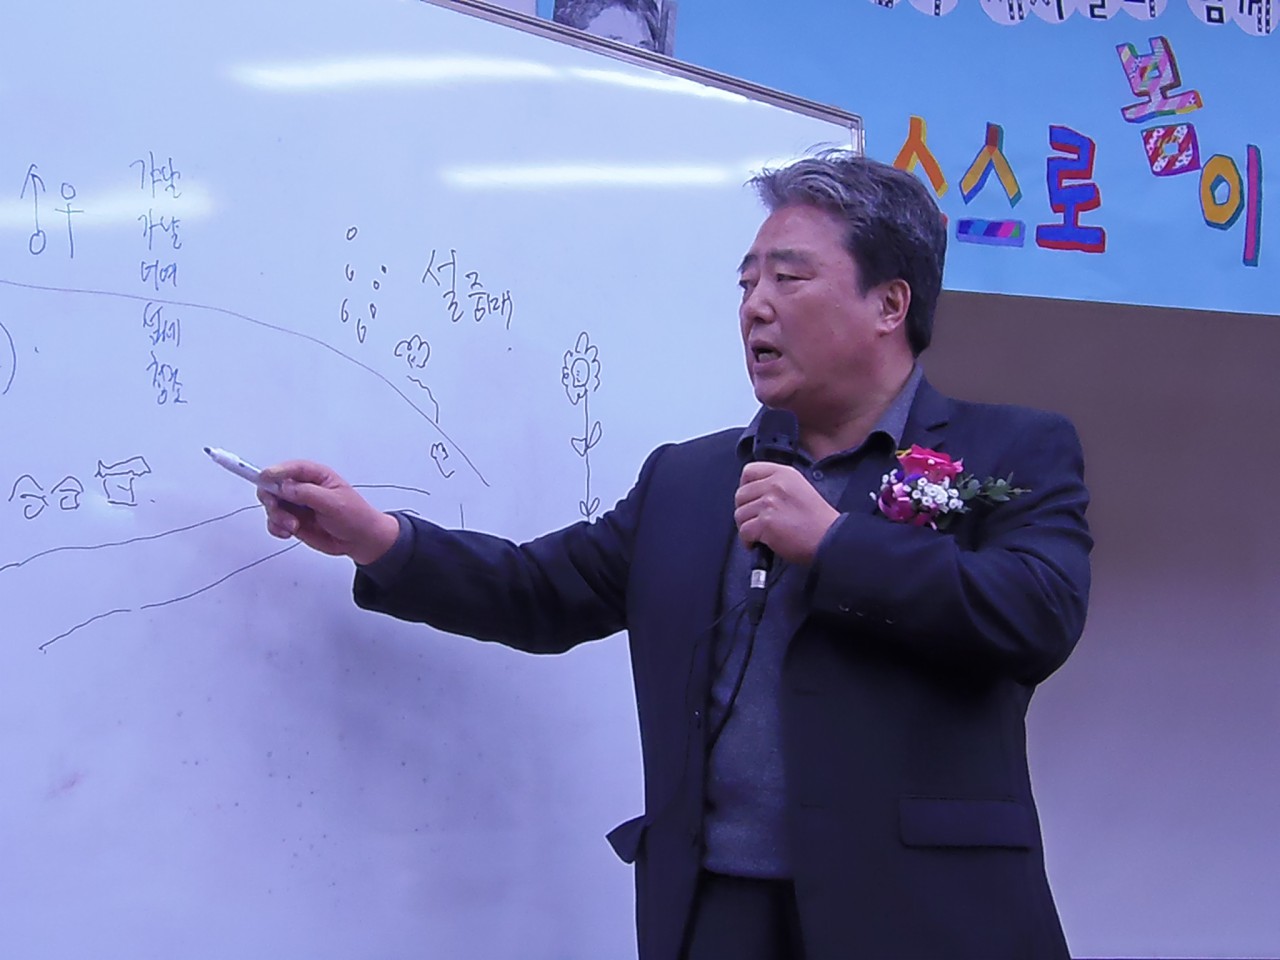 '광야'를 그림으로 표현하고 있는 이상석 선생님